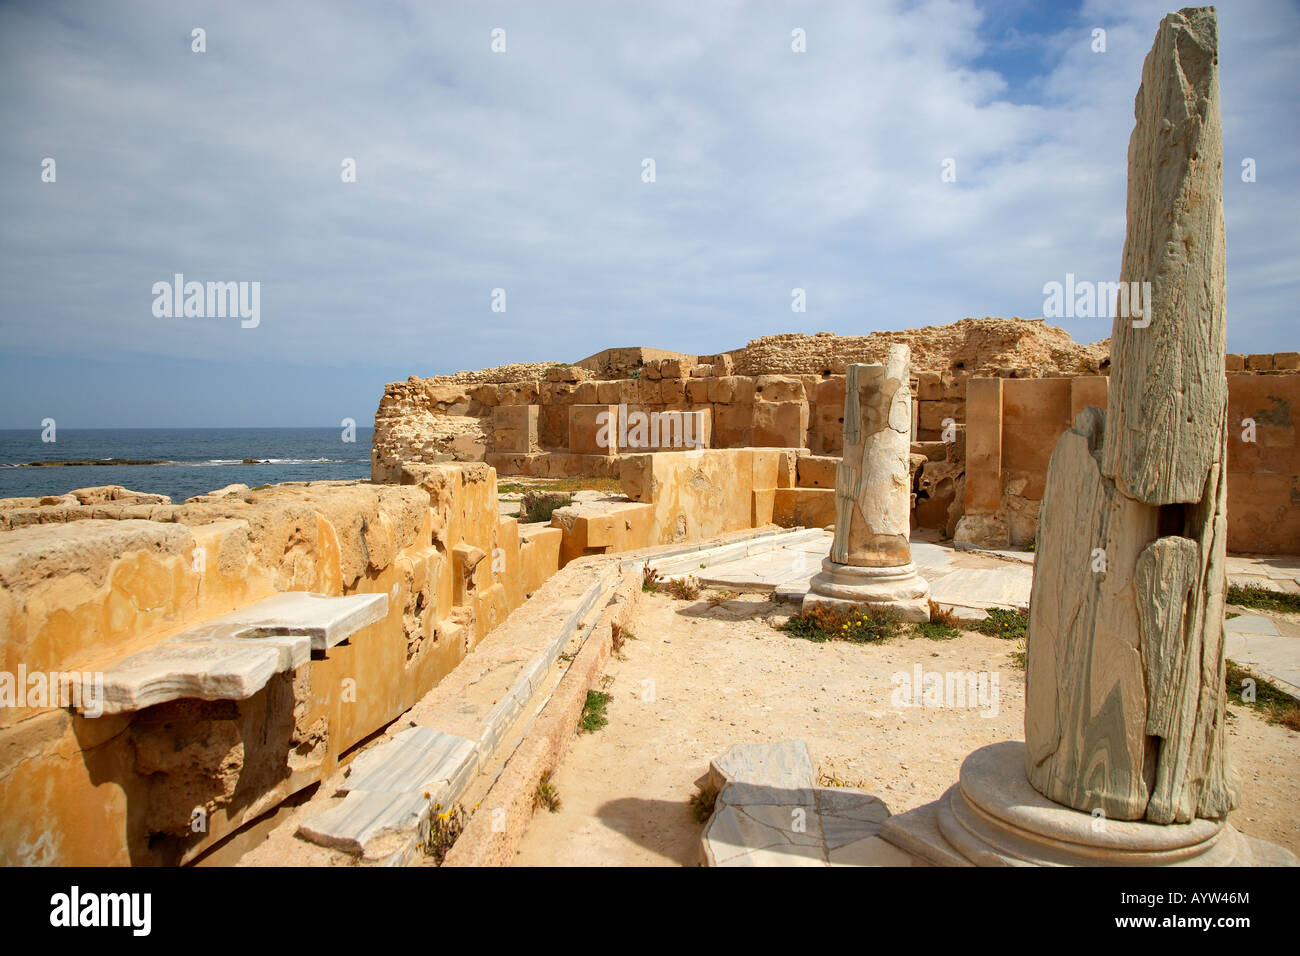 Marble Latrines at the Ancient Roman City of Sabratha, Libya Stock Photo